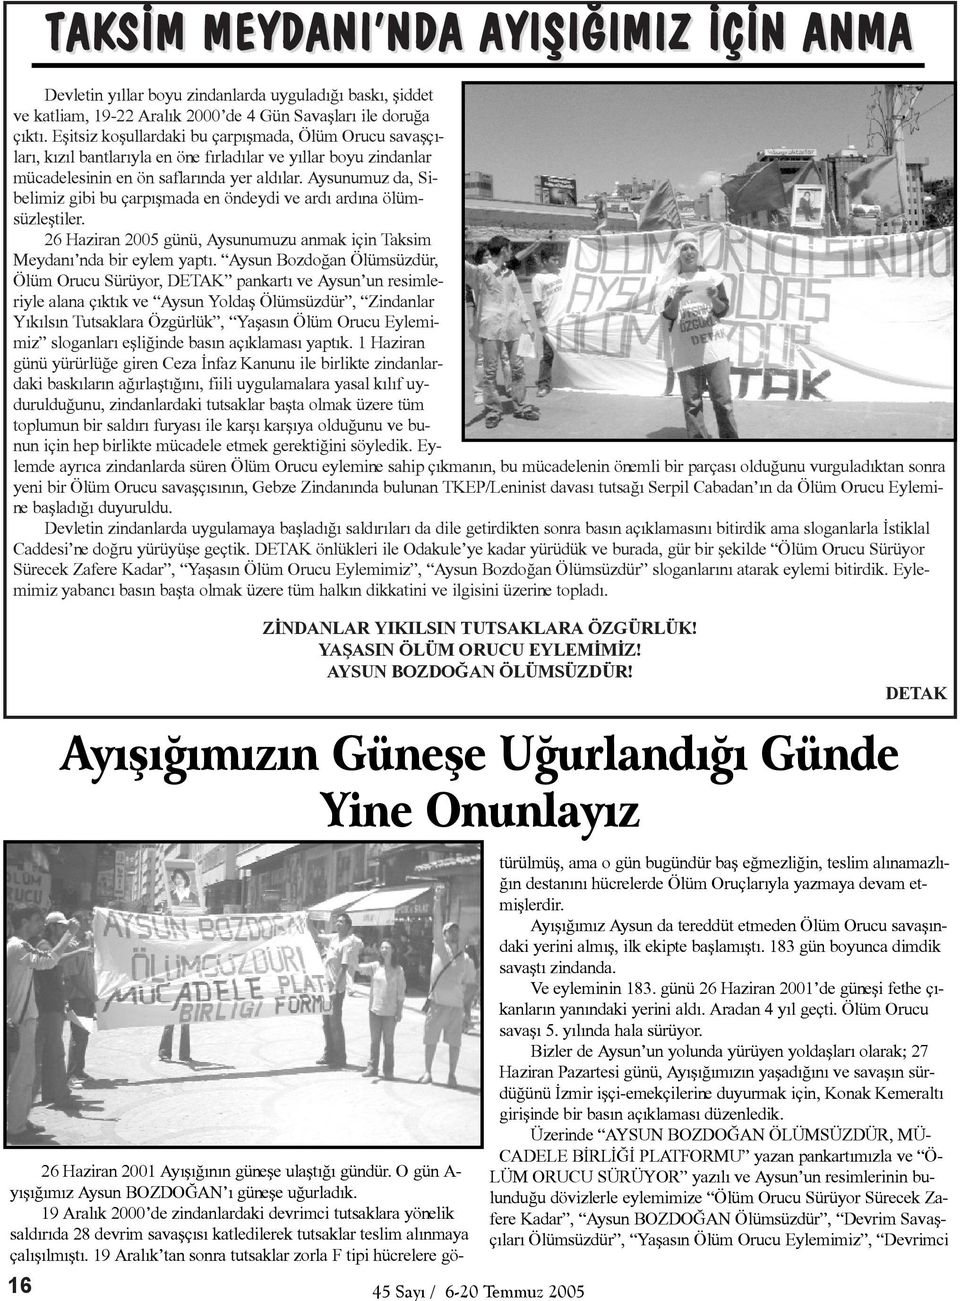 Aysunumuz da, Sibelimiz gibi bu çarpýþmada en öndeydi ve ardý ardýna ölümsüzleþtiler. 26 Haziran 2005 günü, Aysunumuzu anmak için Taksim Meydaný nda bir eylem yaptý.